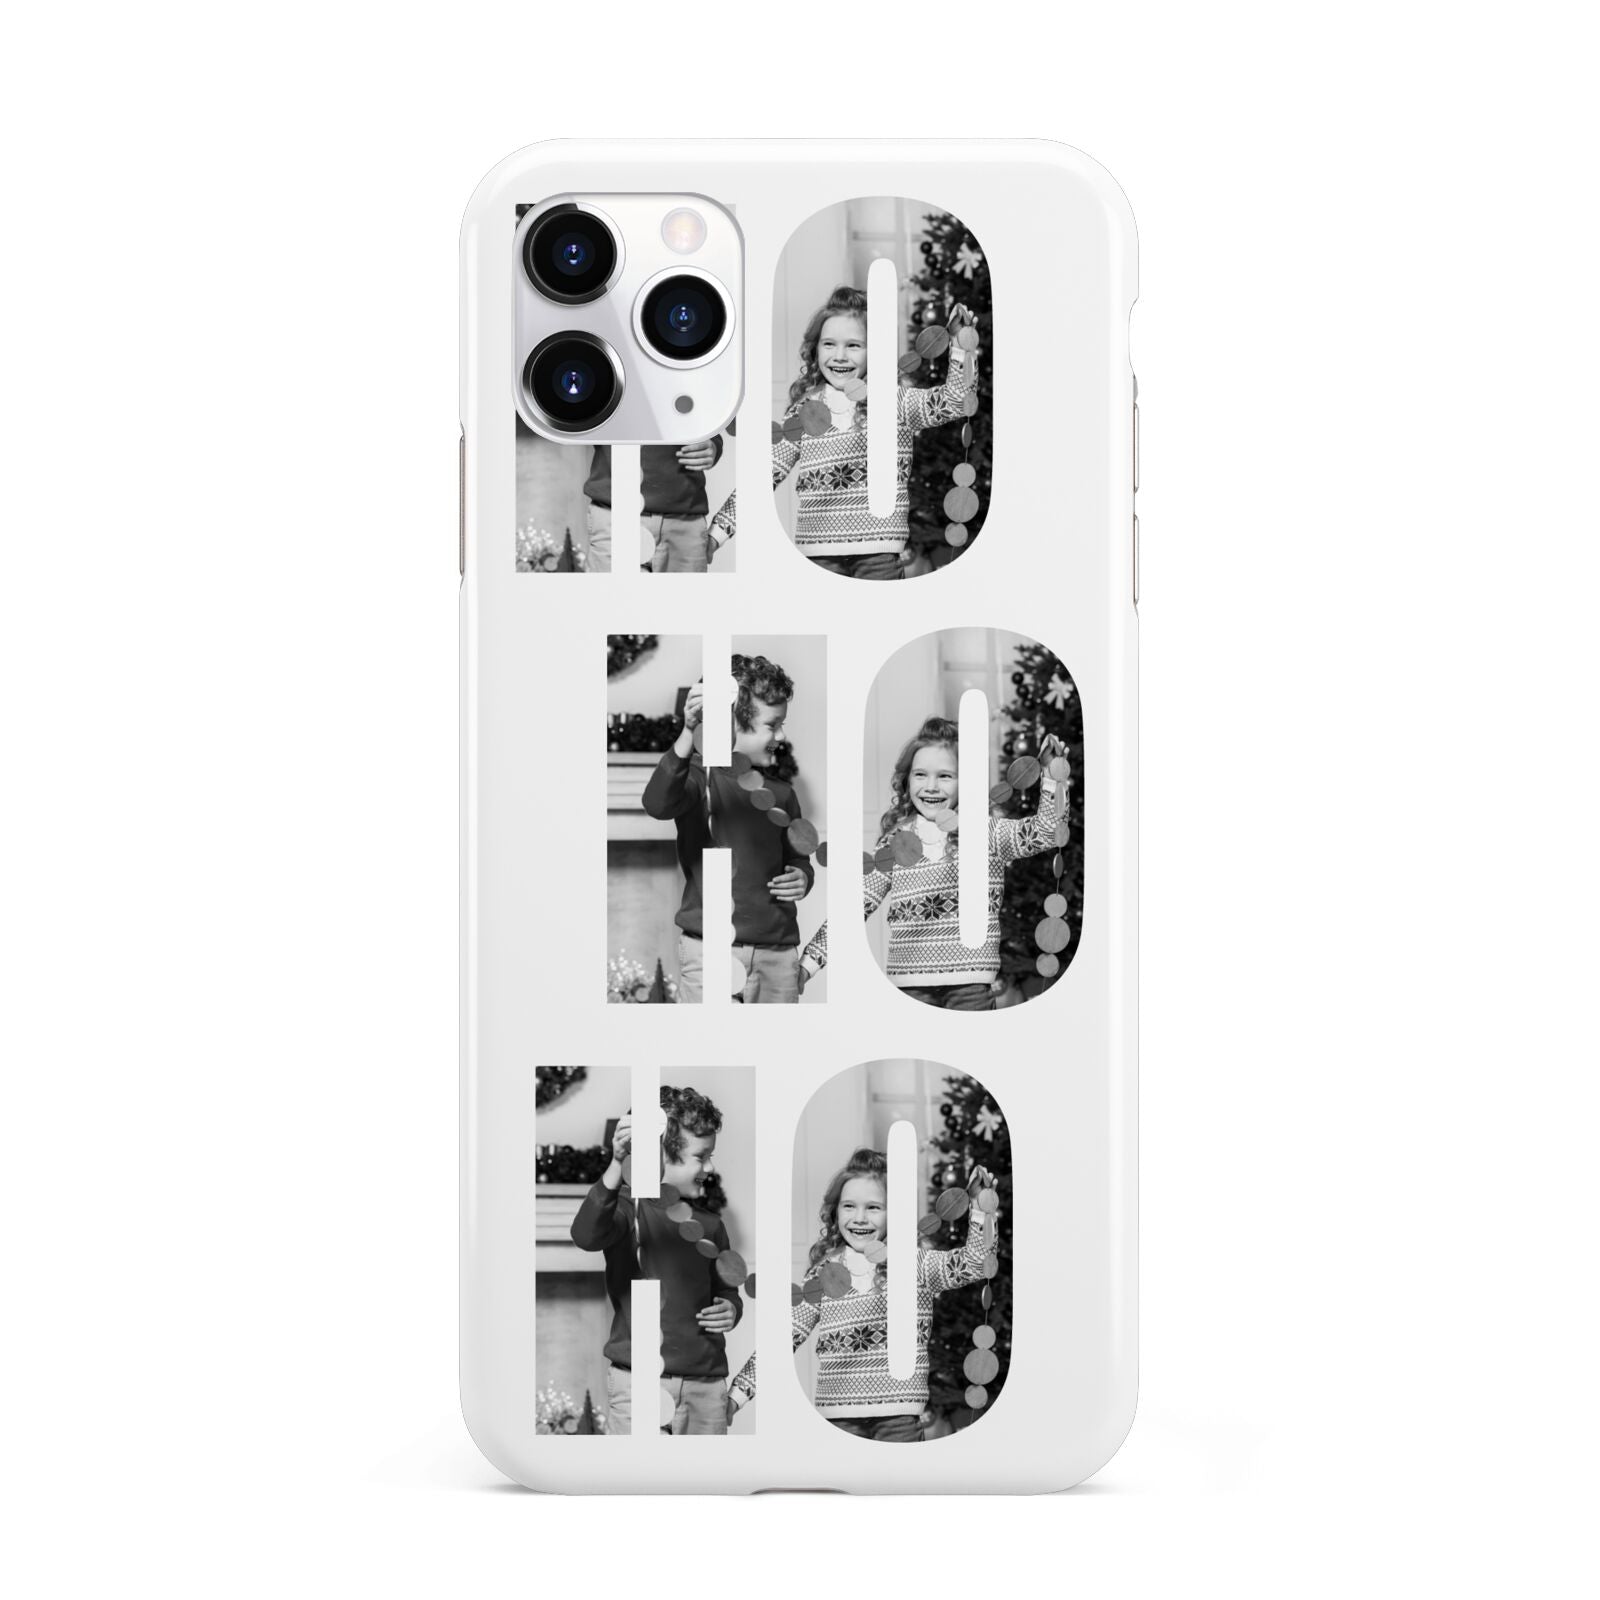 Ho Ho Ho Photo Upload Christmas iPhone 11 Pro Max 3D Tough Case